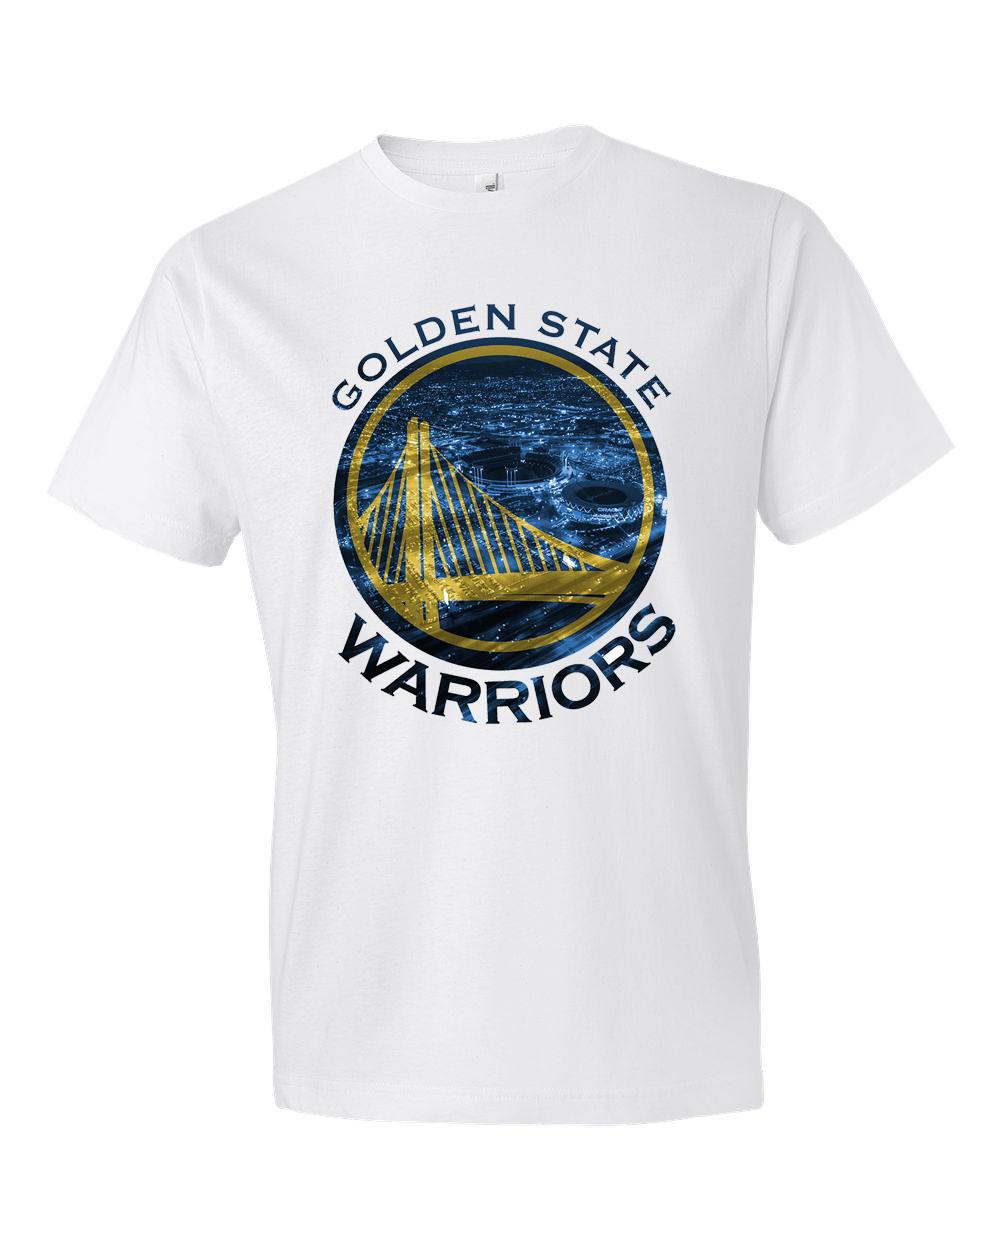 golden state warriors the town t shirt